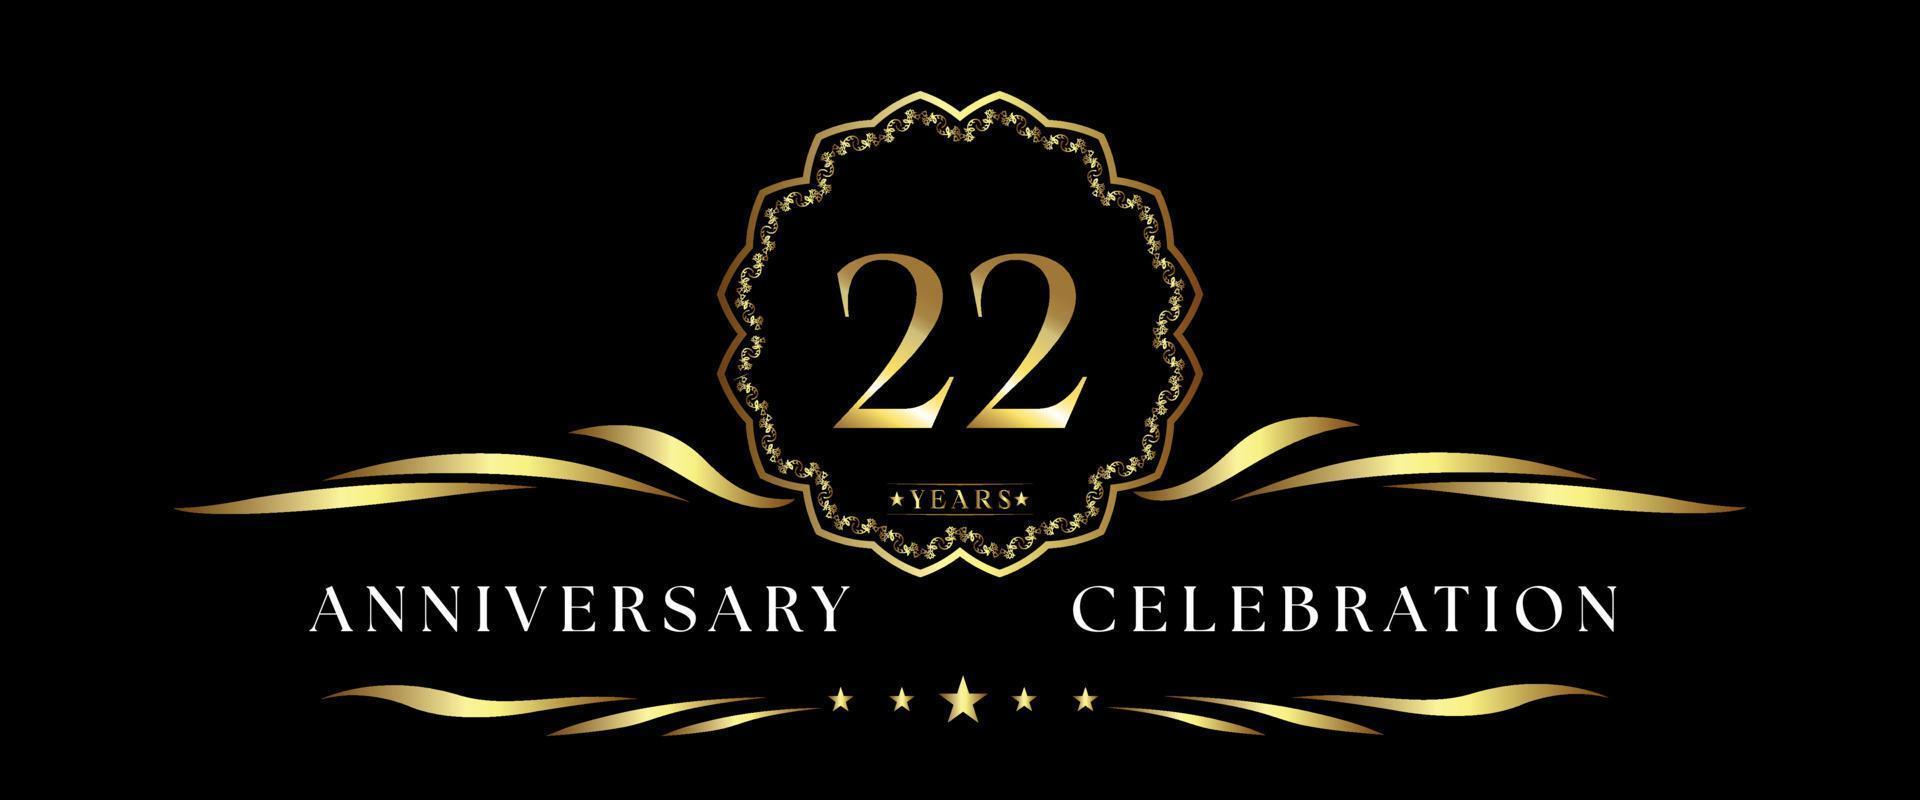 Celebrazione dell'anniversario di 22 anni con cornice decorativa dorata isolata su sfondo nero. disegno vettoriale per biglietto di auguri, festa di compleanno, matrimonio, festa evento, cerimonia. Logo dell'anniversario di 22 anni.